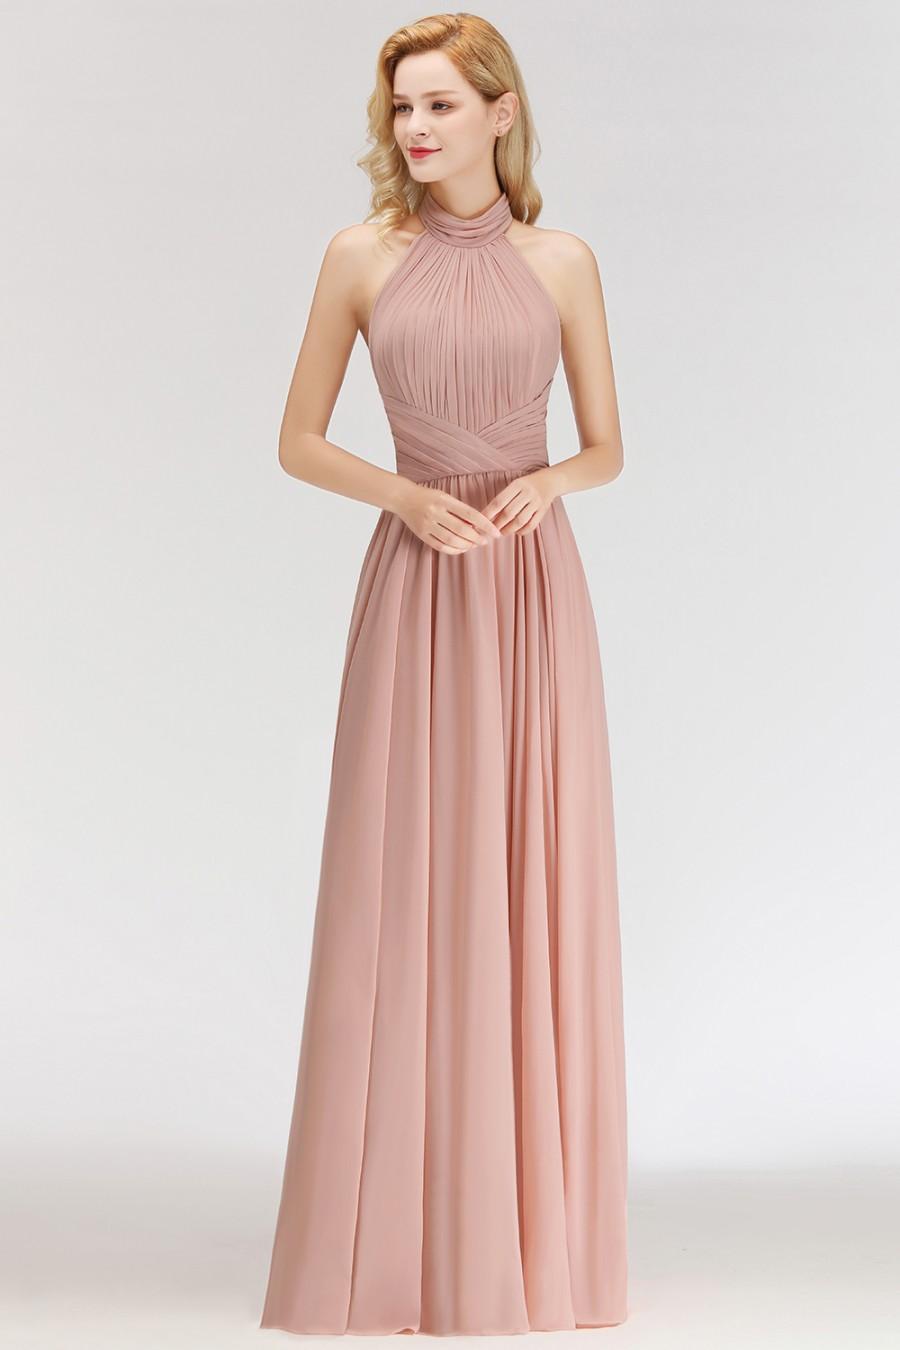 Hochzeit - Modern Rosa Long Chiffon Brautjungfernkleider Etuikleid Kleider für Brautjunfern Modellnummer: BM0043